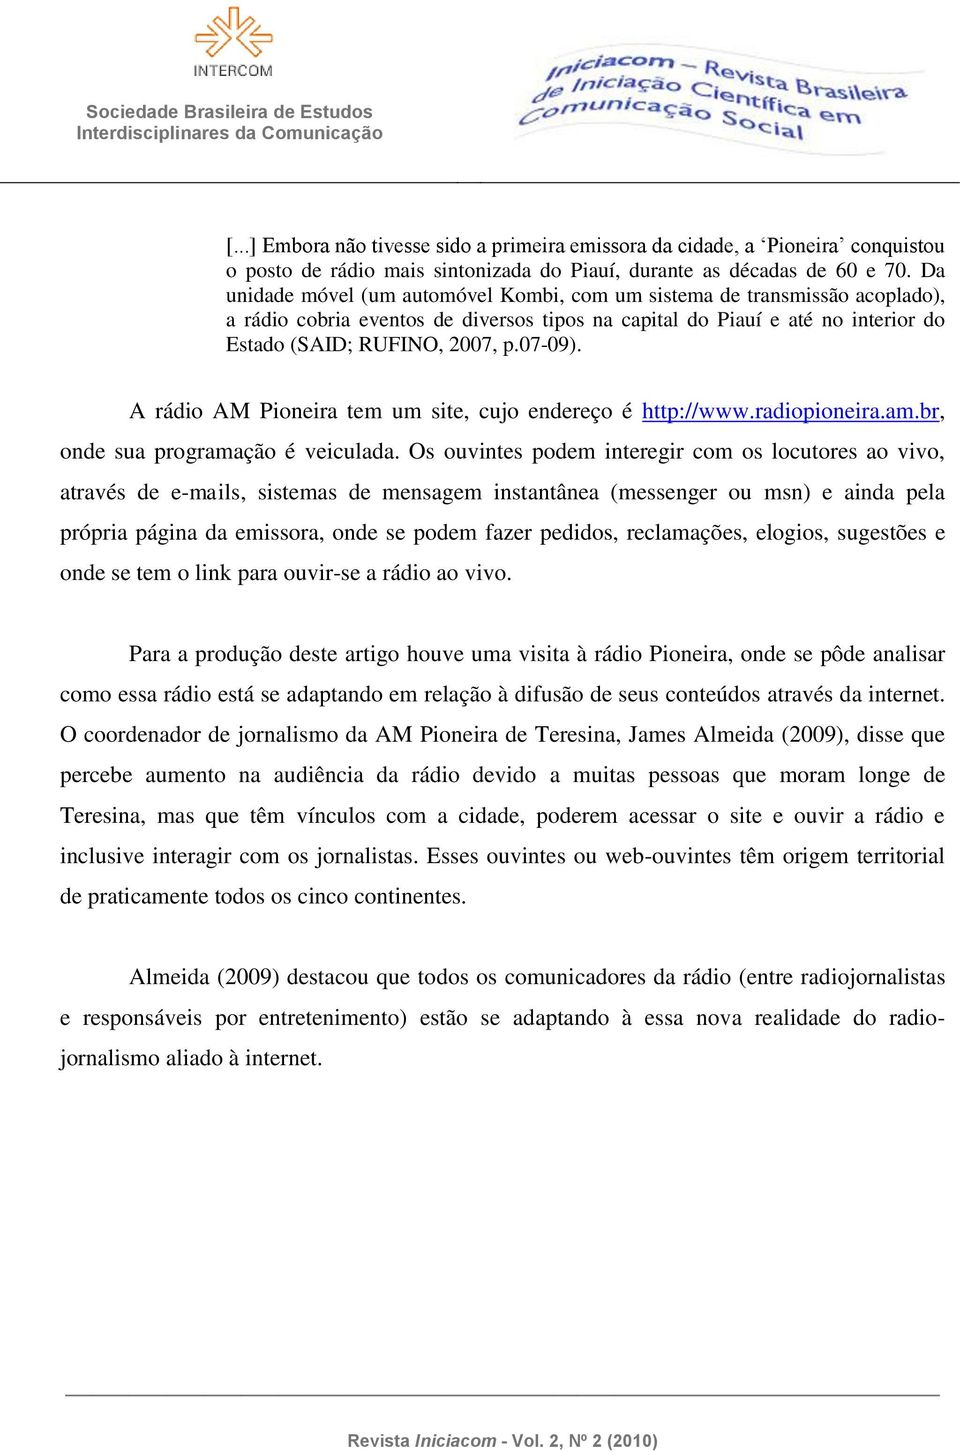 A rádio AM Pioneira tem um site, cujo endereço é http://www.radiopioneira.am.br, onde sua programação é veiculada.